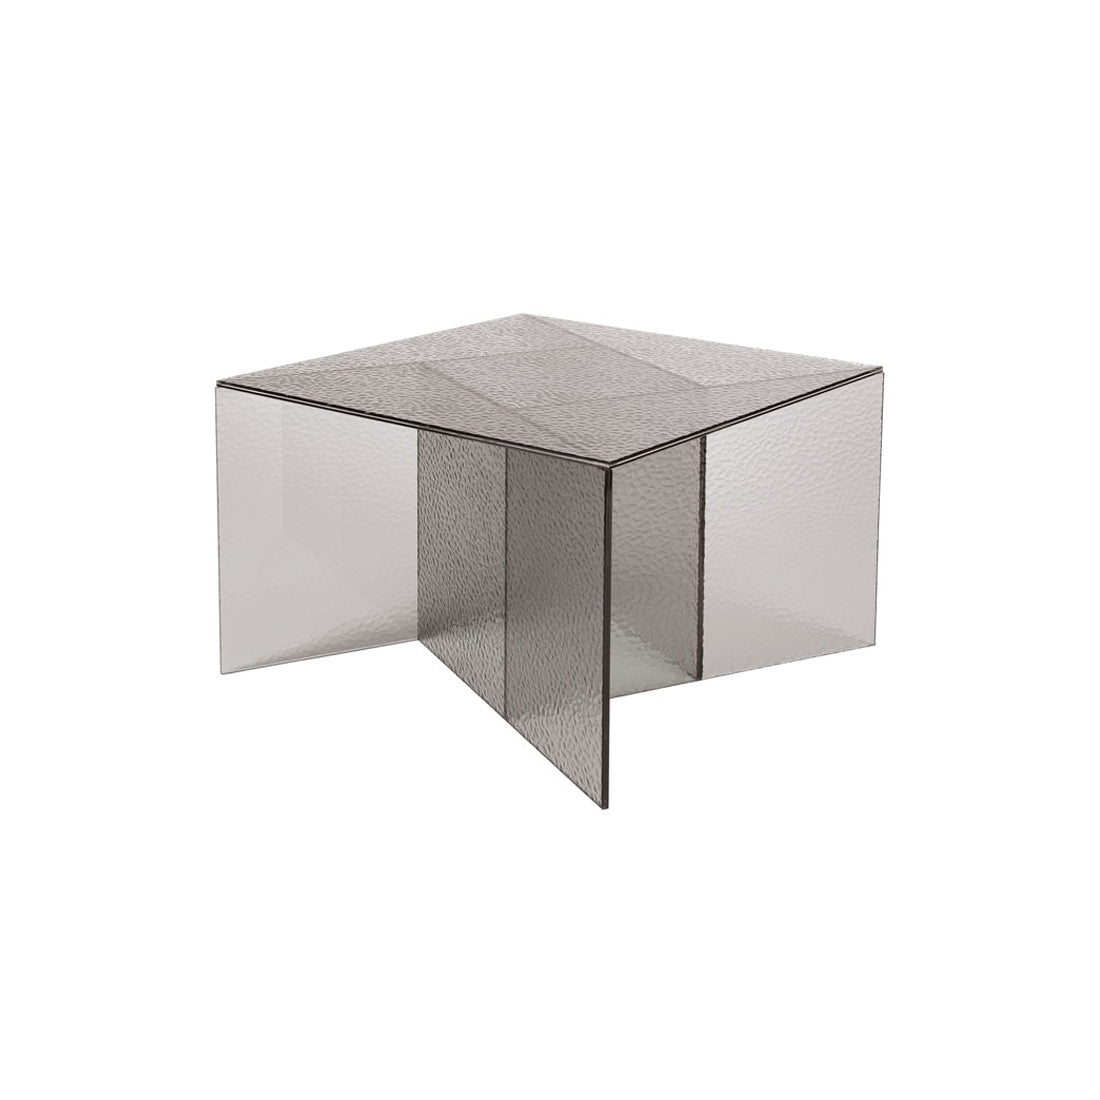 Aspa Side Table: Medium - 23.6